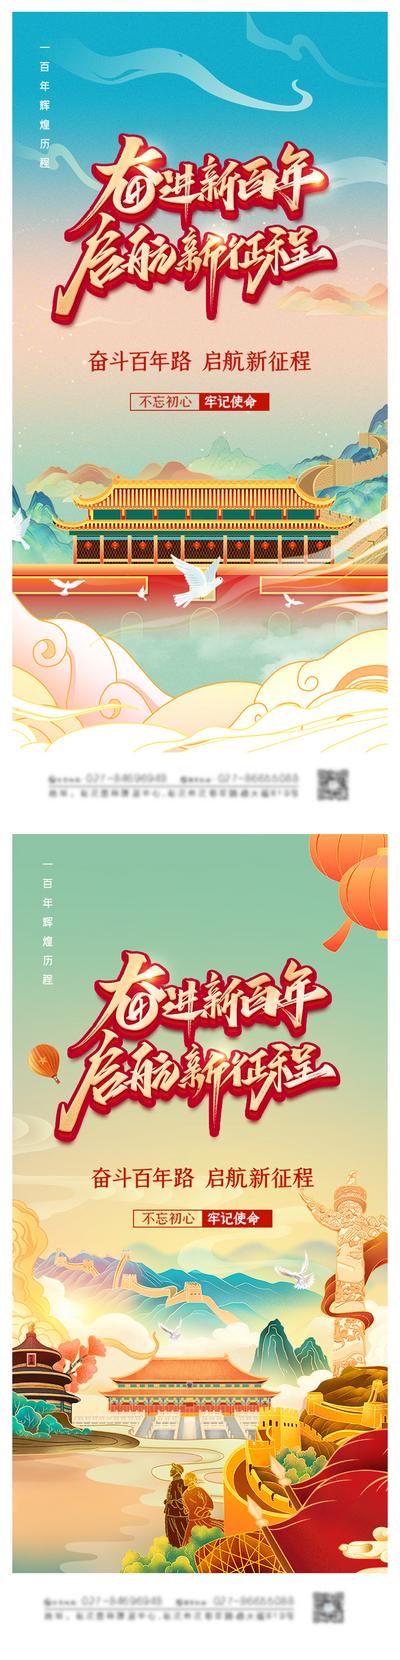 南门网 海报 地产 公历节日 建党节 辉煌 周年 插画 手绘 天安门